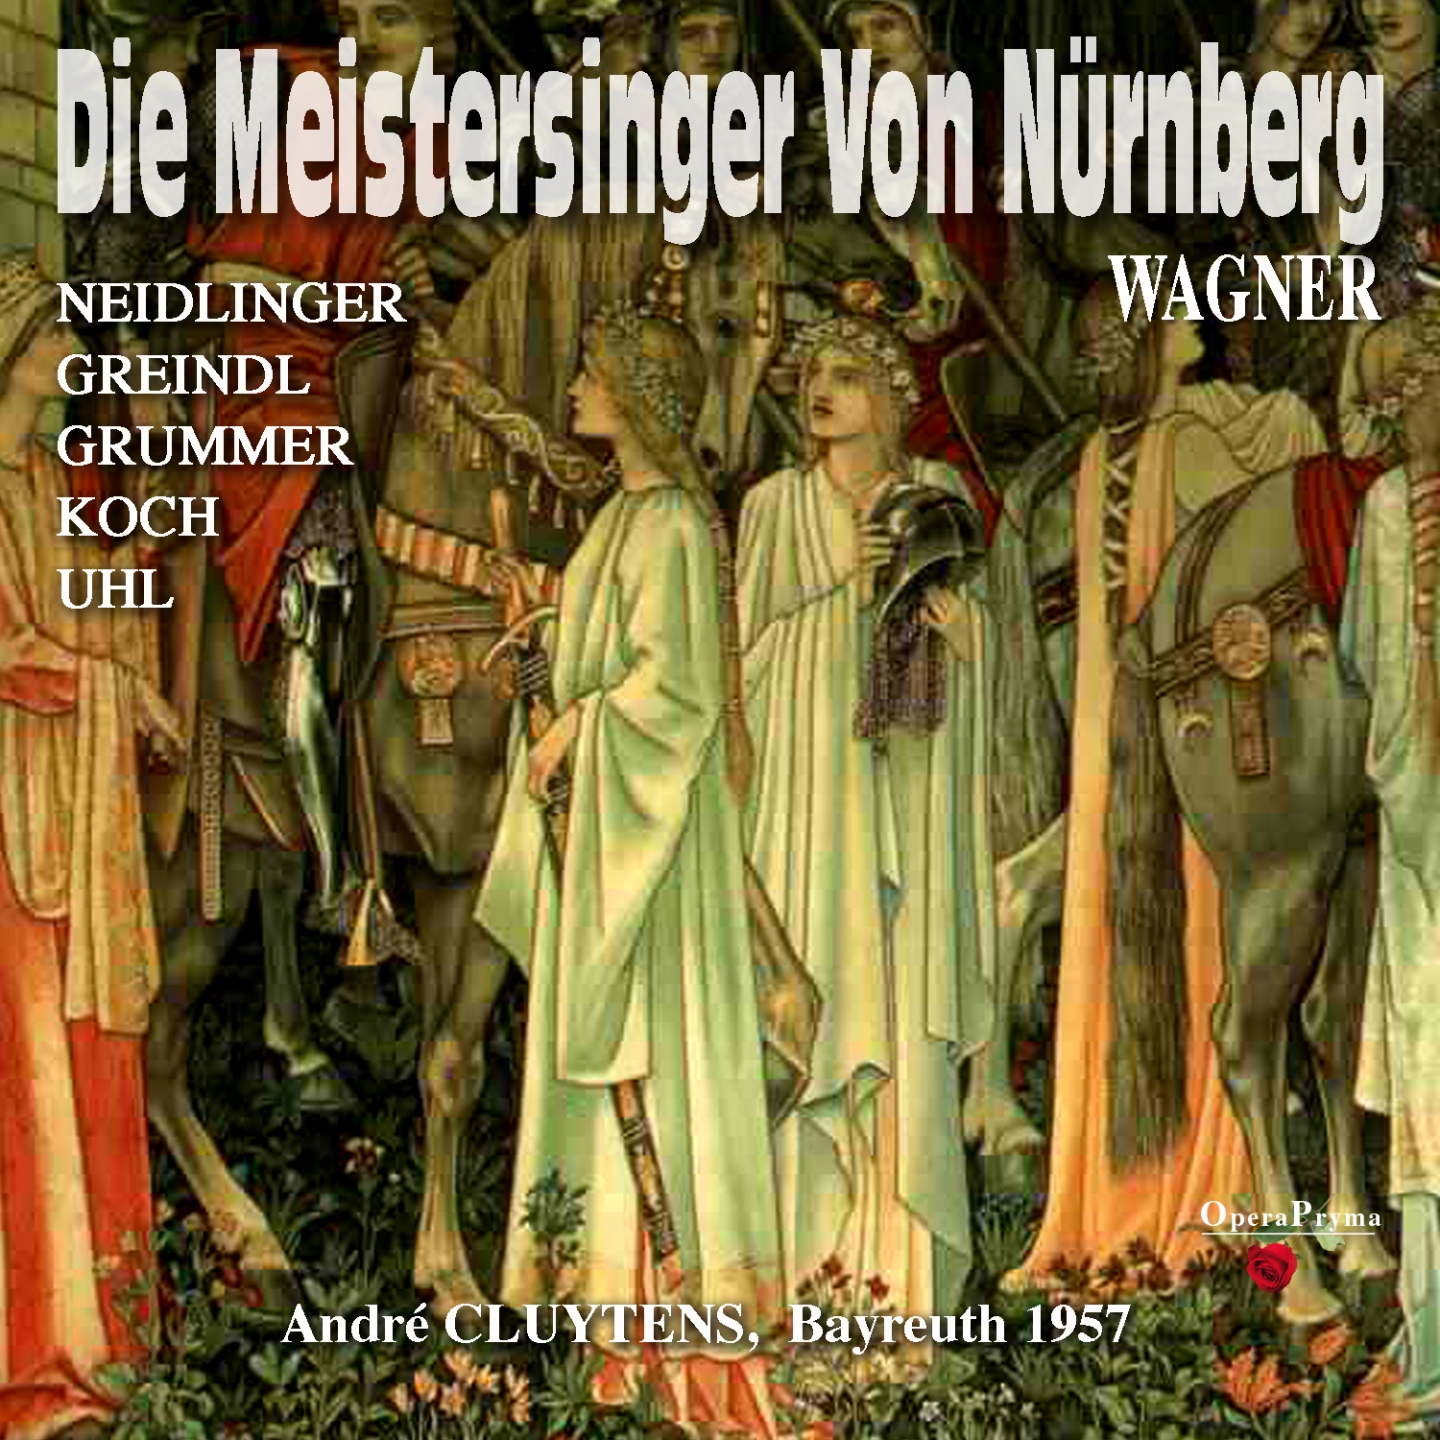 Die Meistersinger von Nü rnberg, Act I: " Was Euch zum Liede Richt' und Schnur" Fritz Kothner, Walther